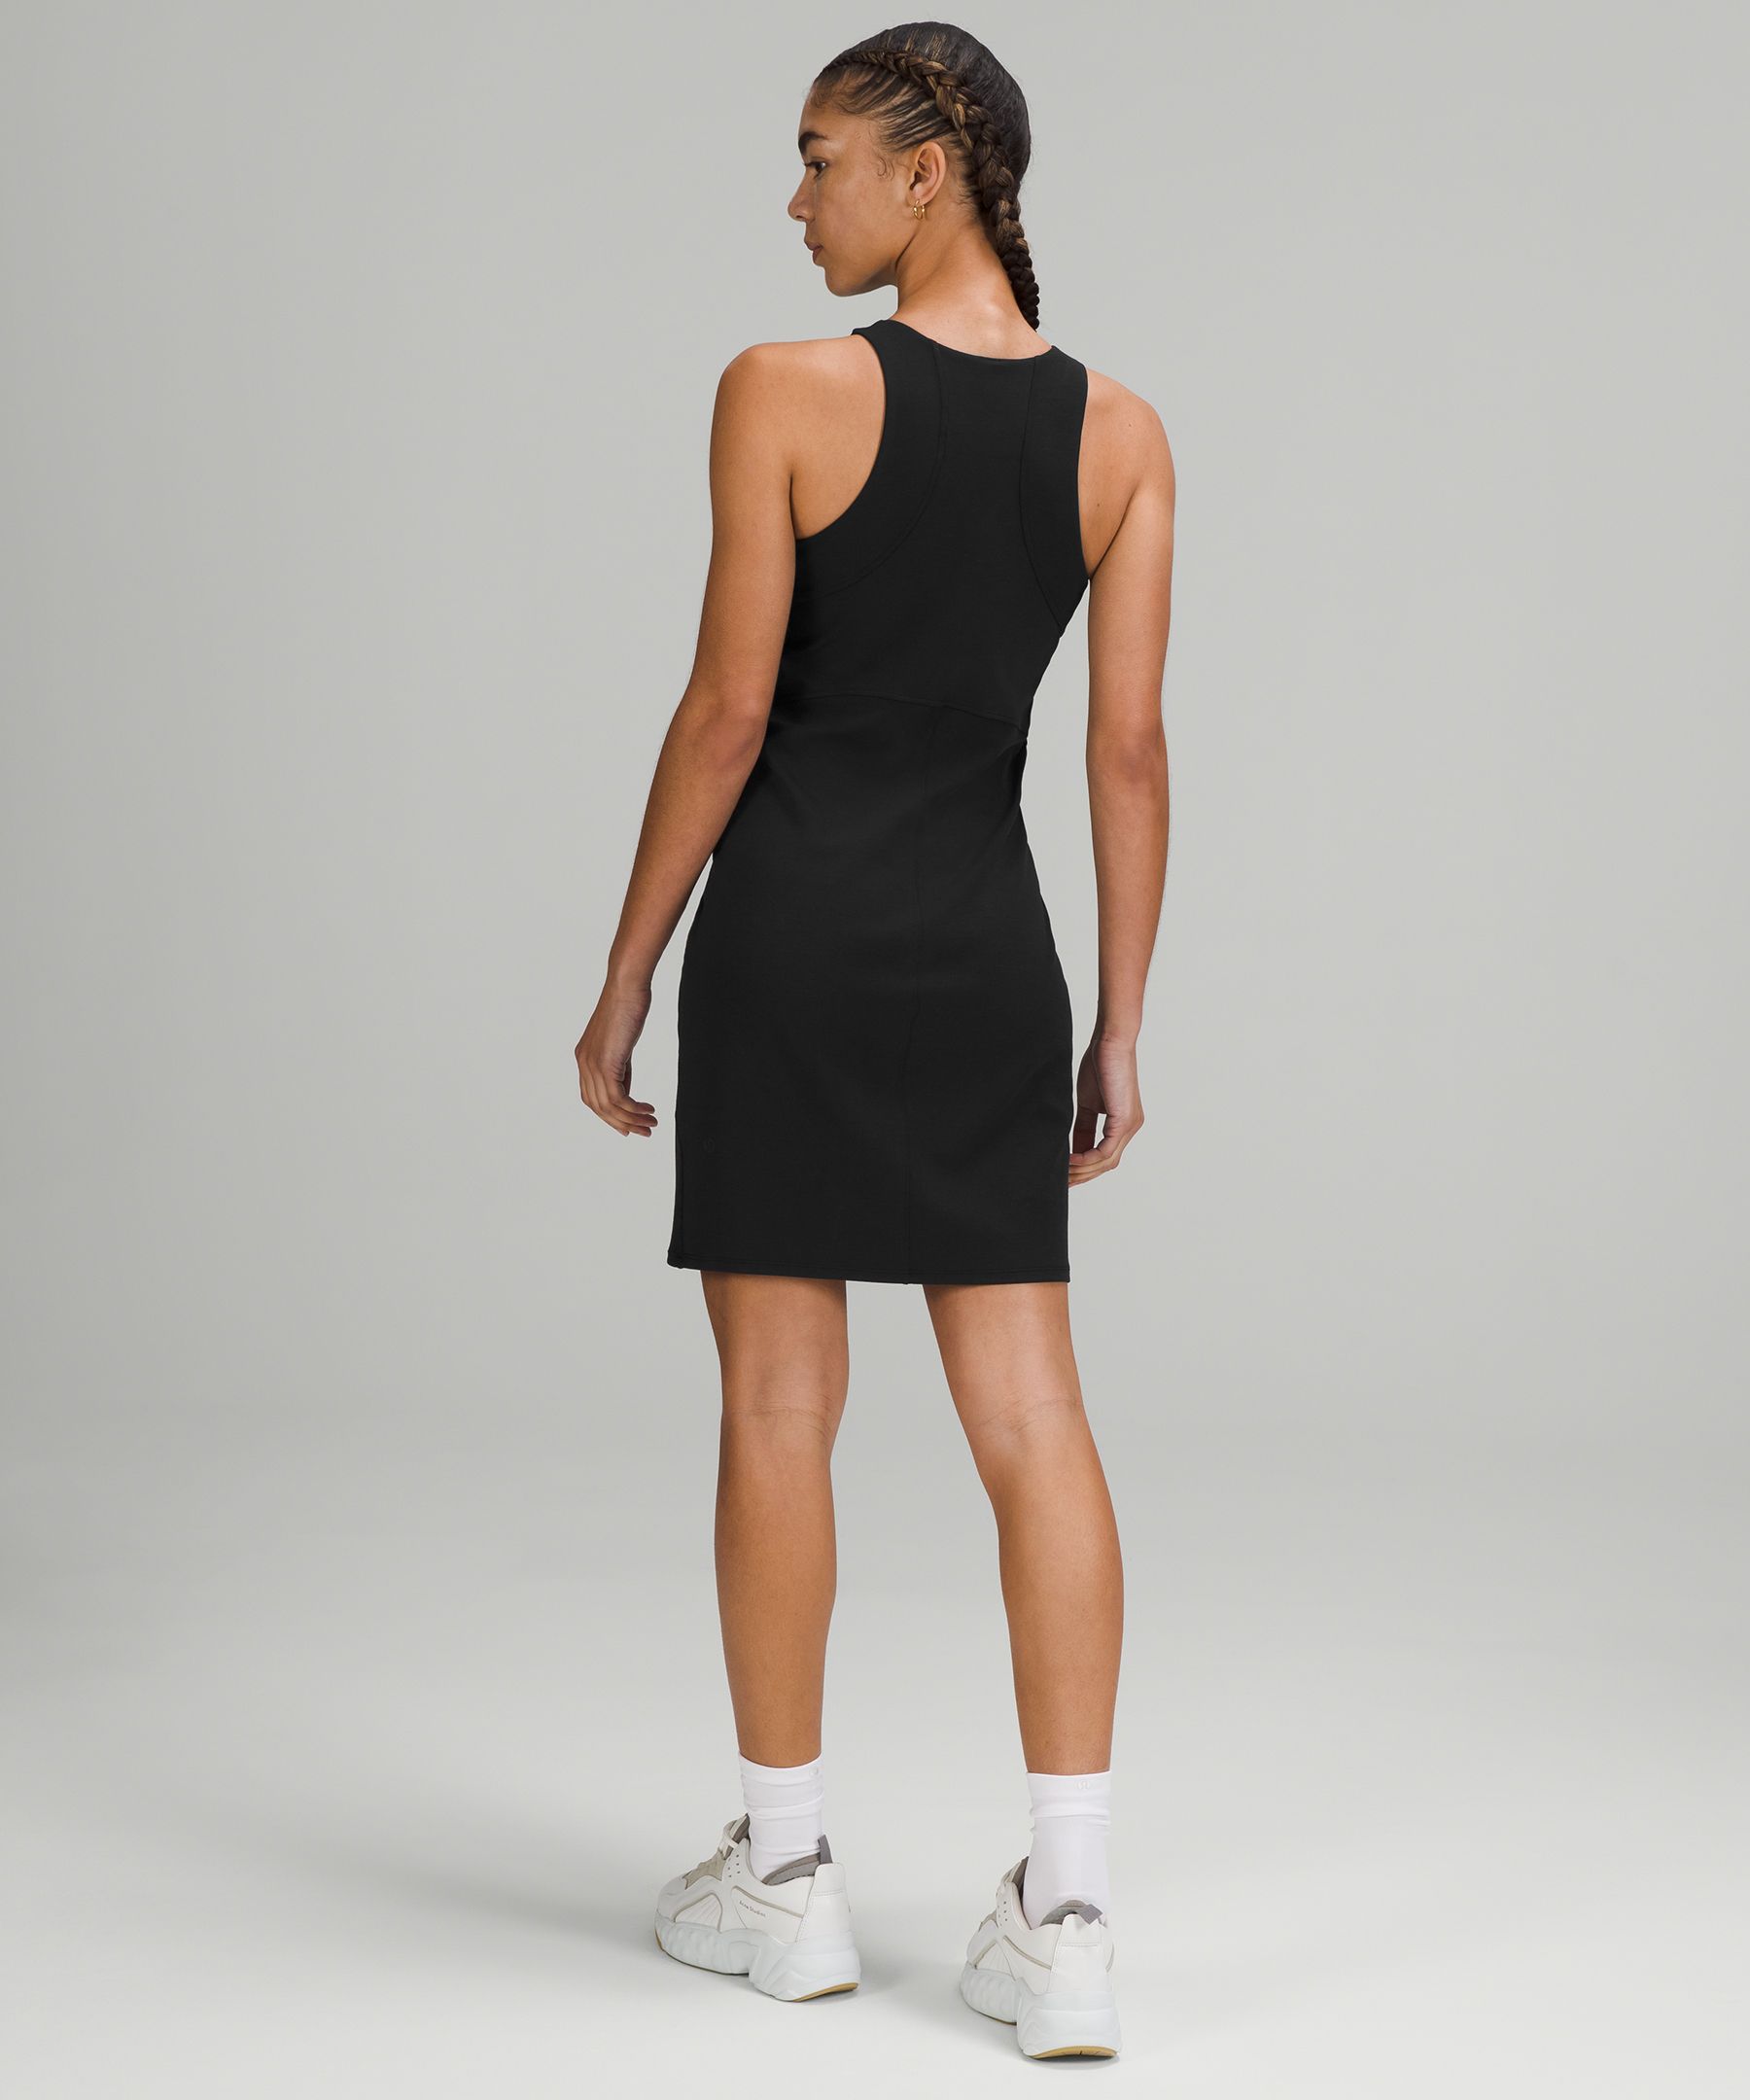 lululemon athletica Ruffle Above Knee & Mini Dresses for Women